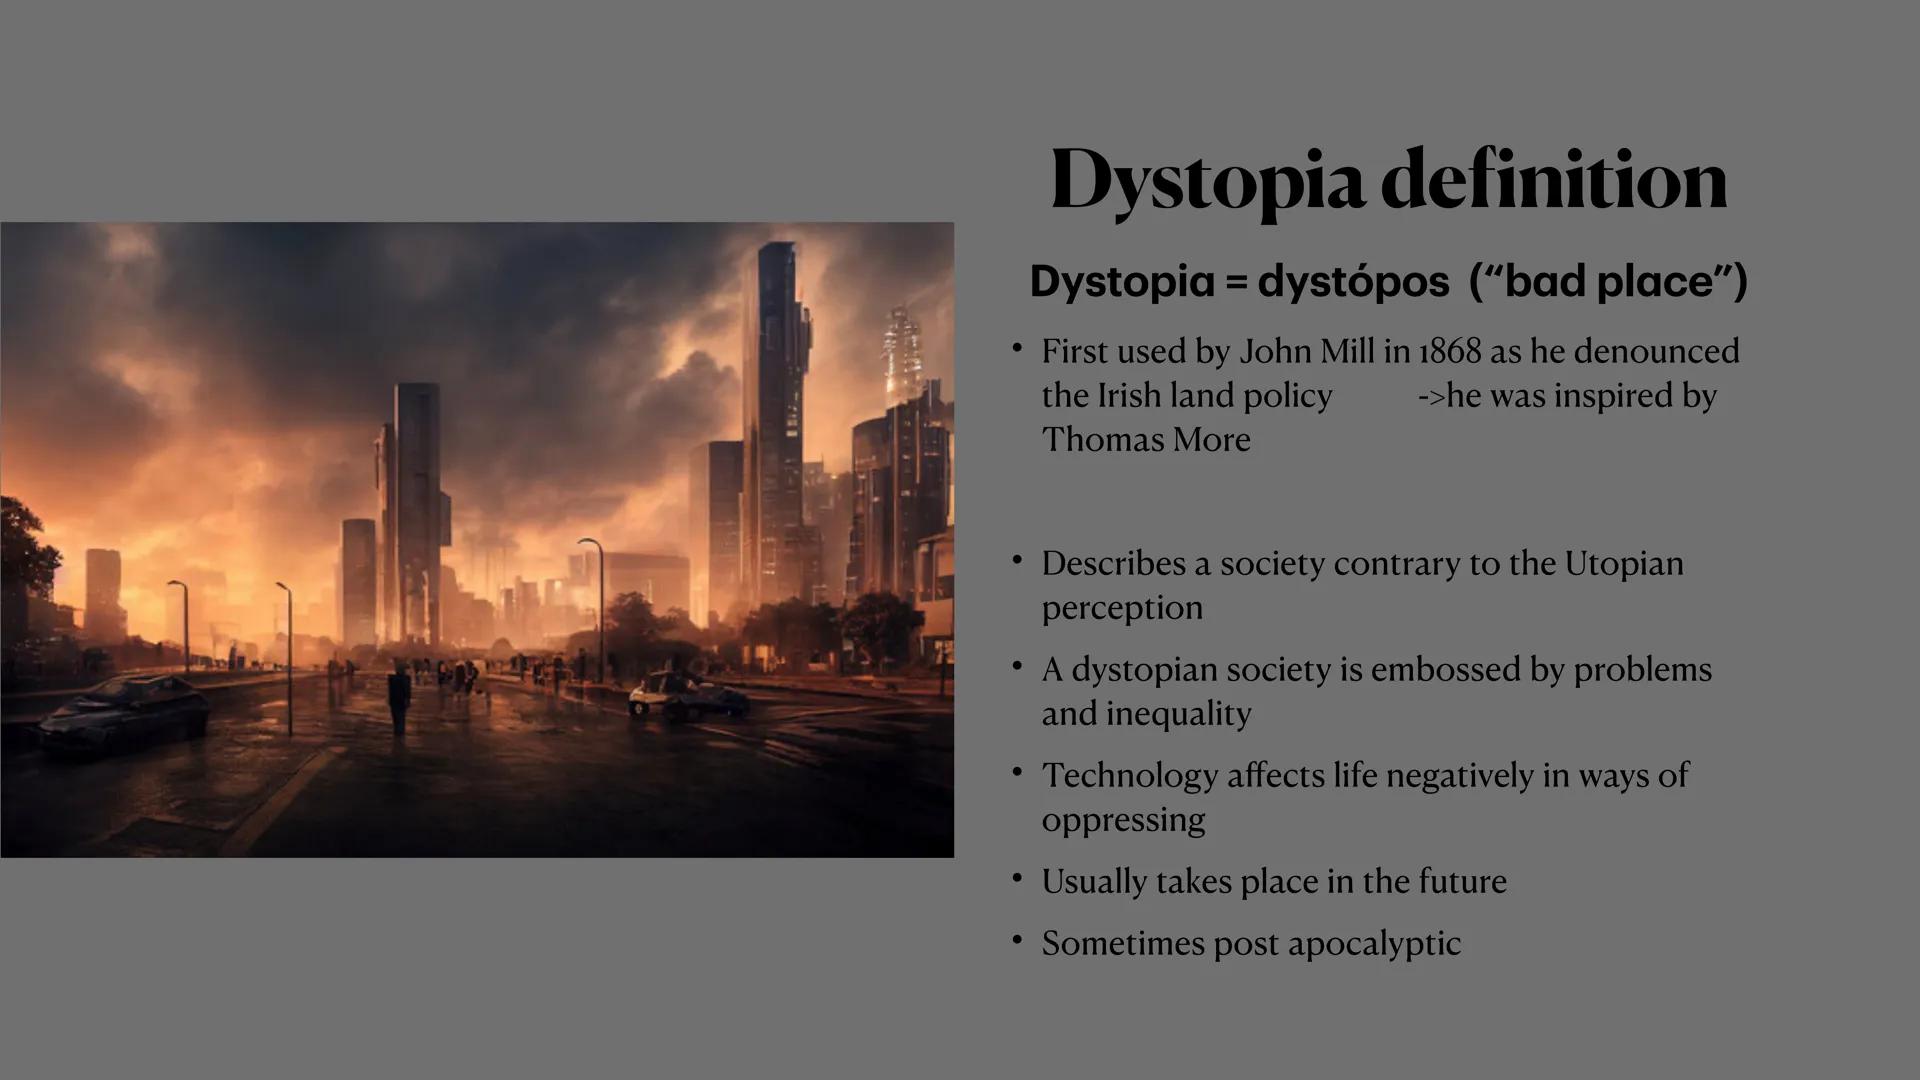 Utopia and Dystopia ●
Definition Utopia
Definition Dystopia
Features of Utopia
• Features of Dystopia
Examples of Utopia and Dystopia in
• M